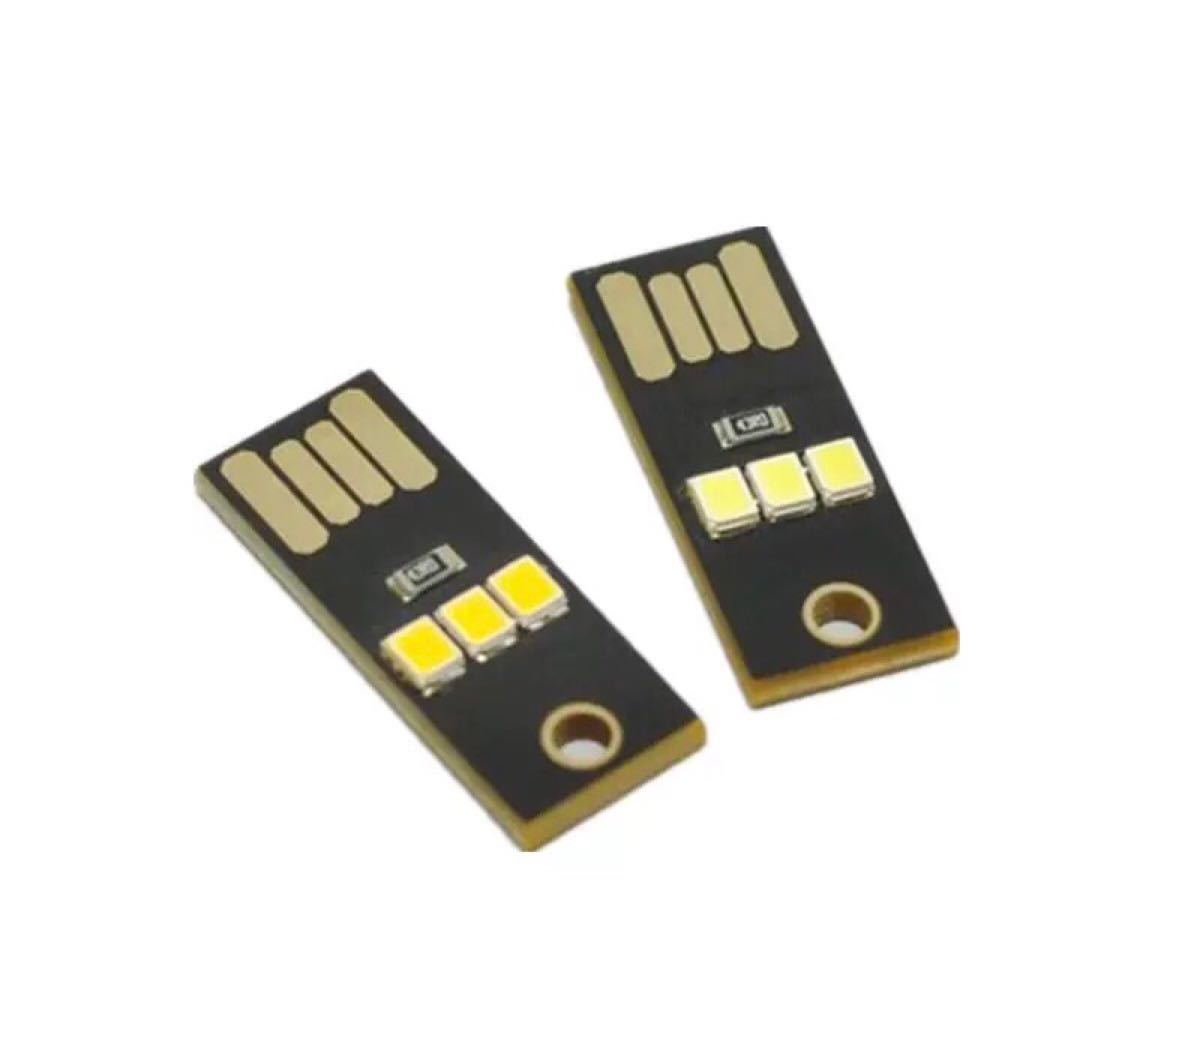  USB LED キーホルダー ポータブルライト3点セット